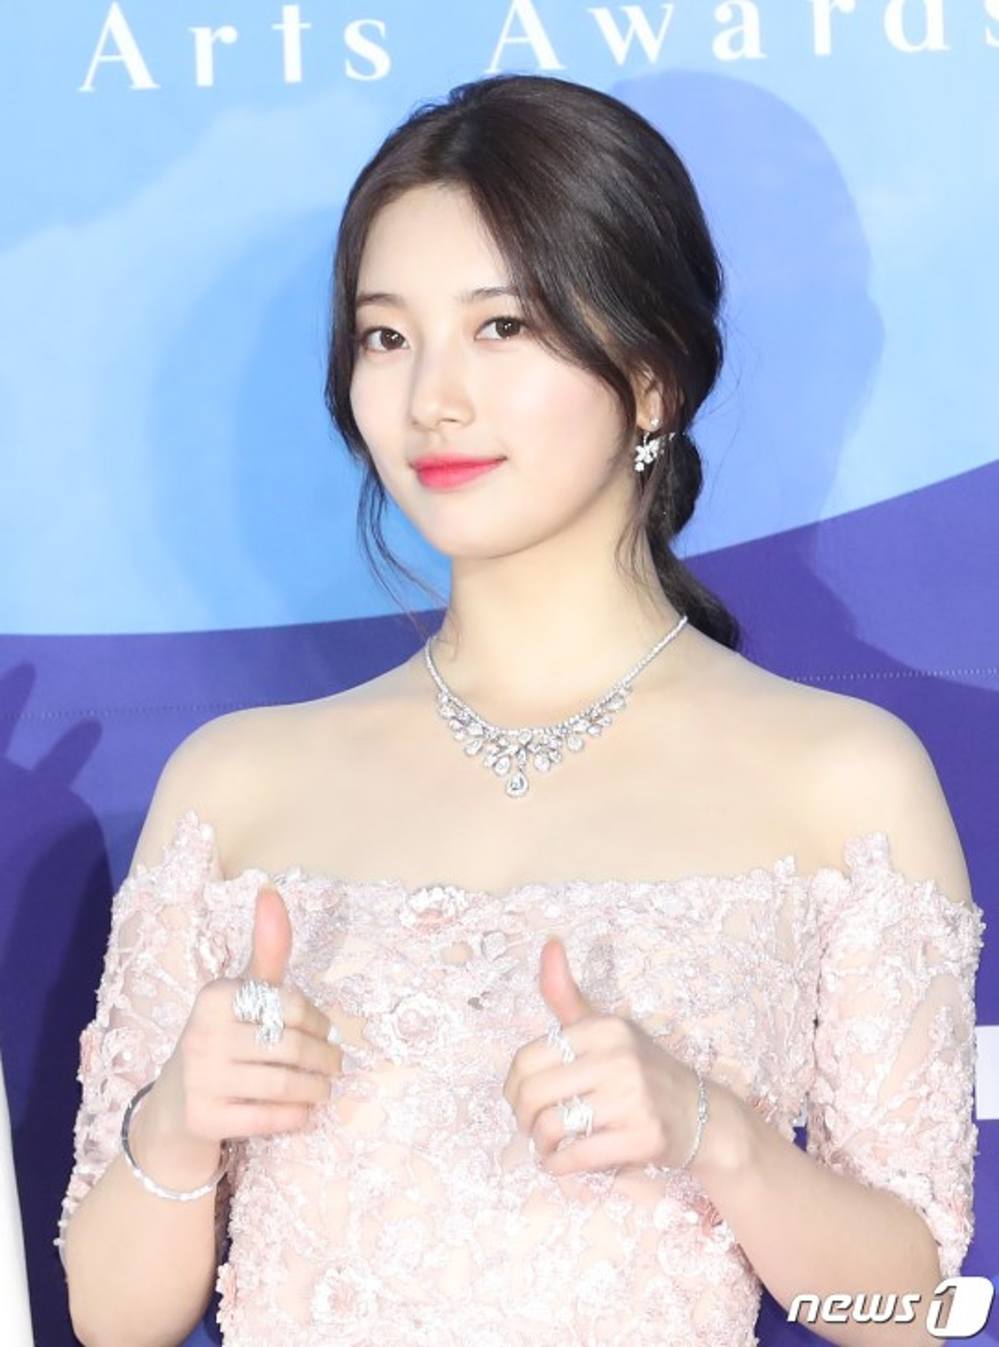  
Mỗi khi xuất hiện trước đám đông là netizen lại phải bàn tán về nhan sắc xinh đẹp của Suzy. Ảnh: News1